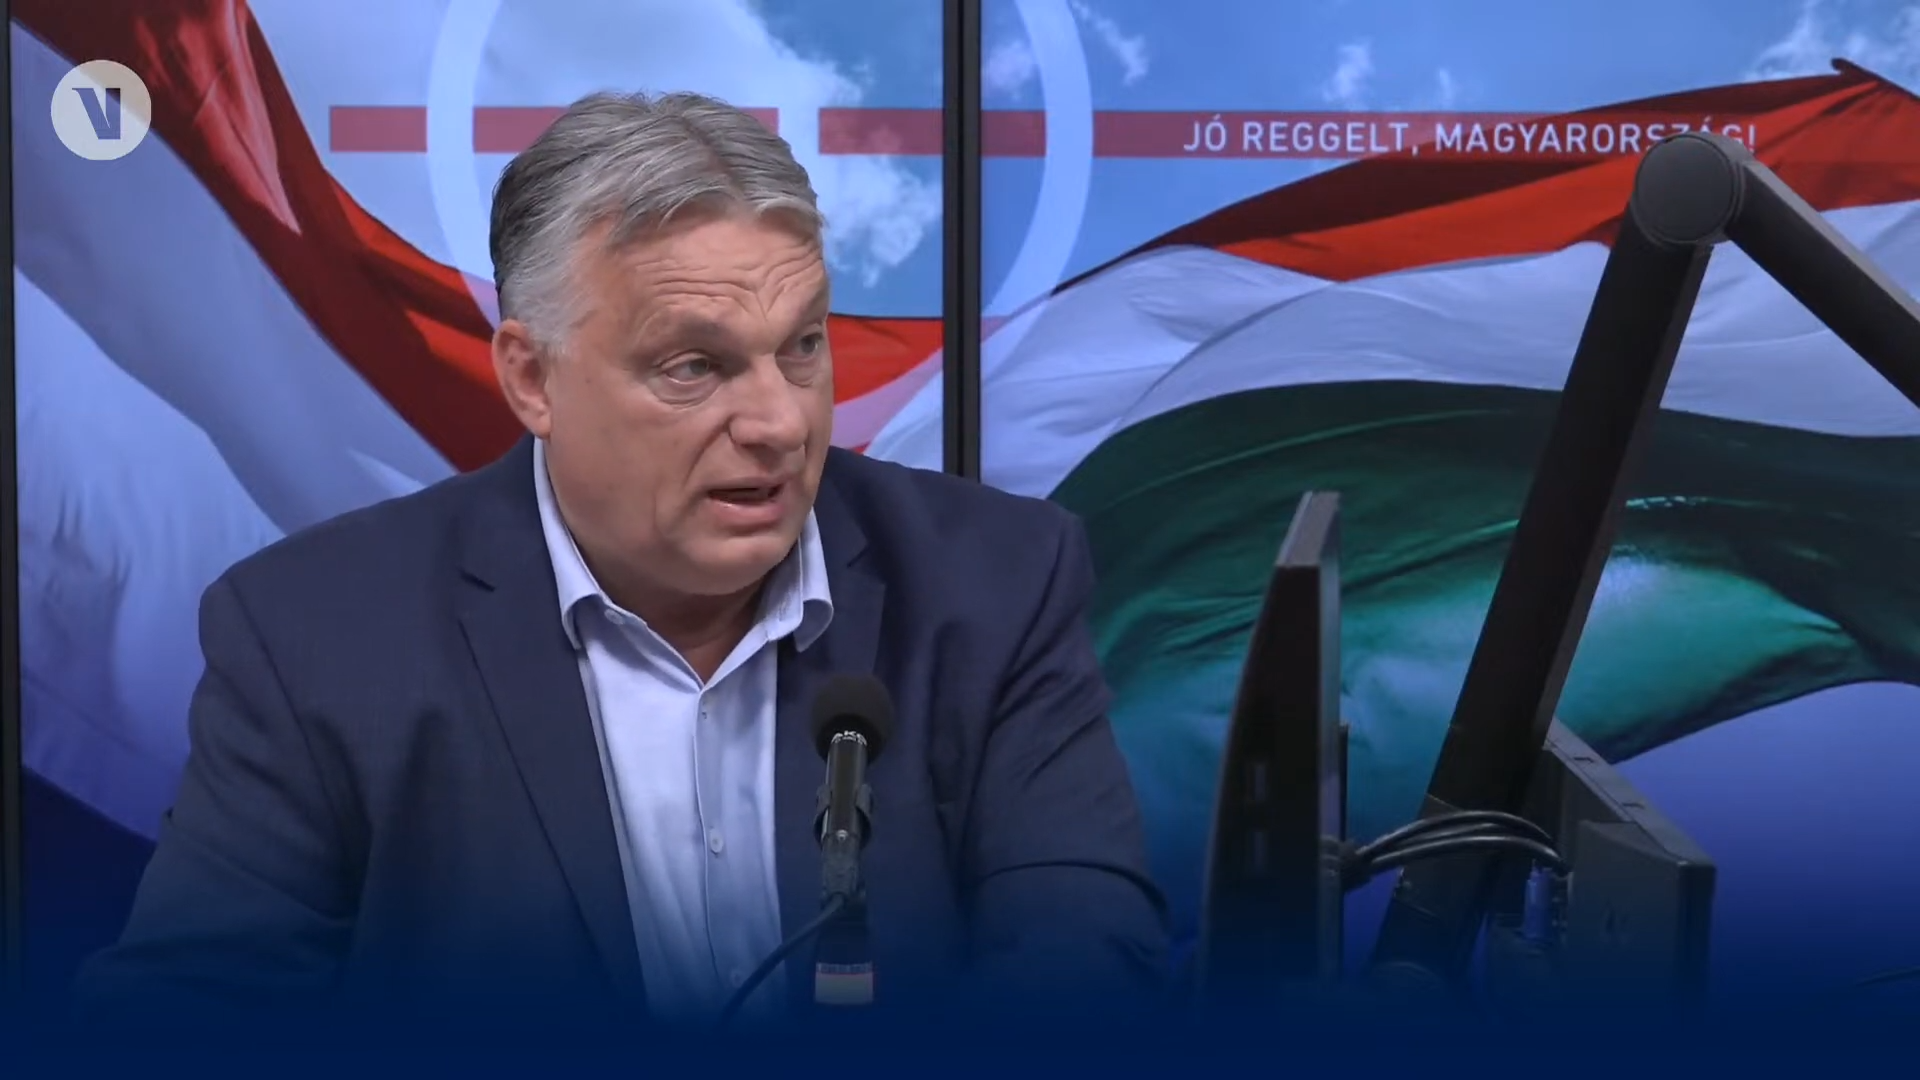 Orbán lustul: csak 59-szer mondta ki, hogy háború